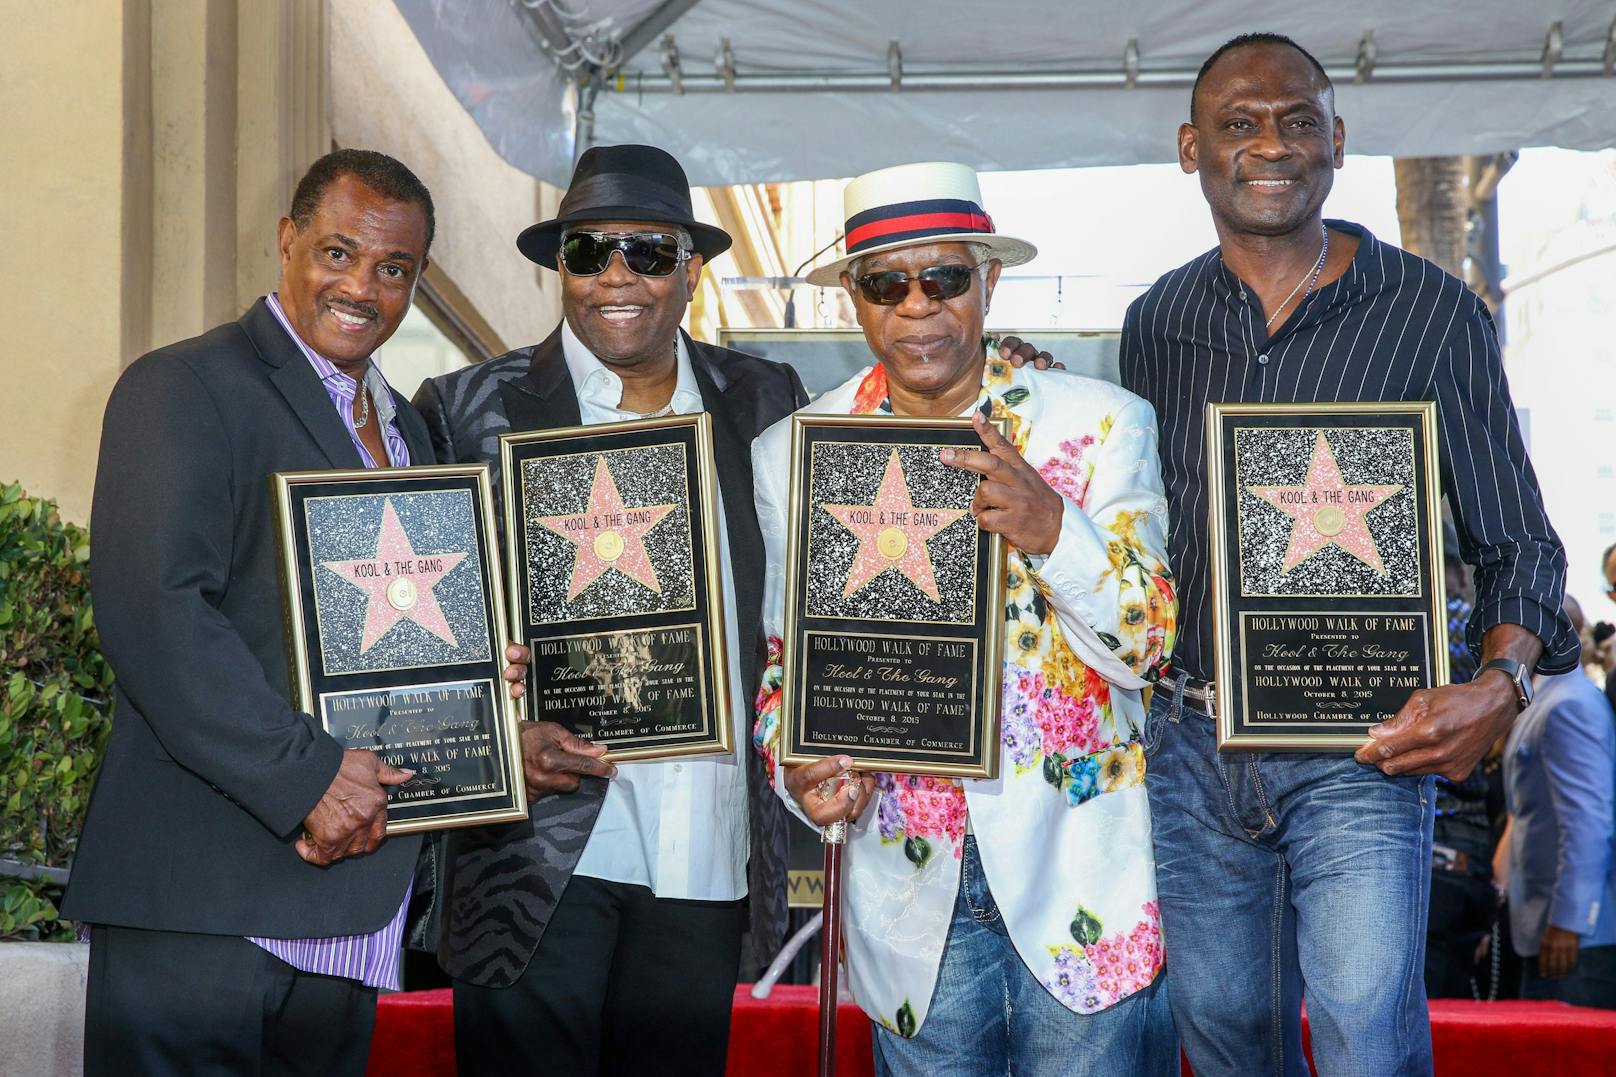 2015 erhielten Robert "Kool" Bell, Ronald "Khalis" Bell, Dennis "DT" Thomas und George Brown (v.l.n.r.) ihren Stern am Hollywood Walk of Fame.